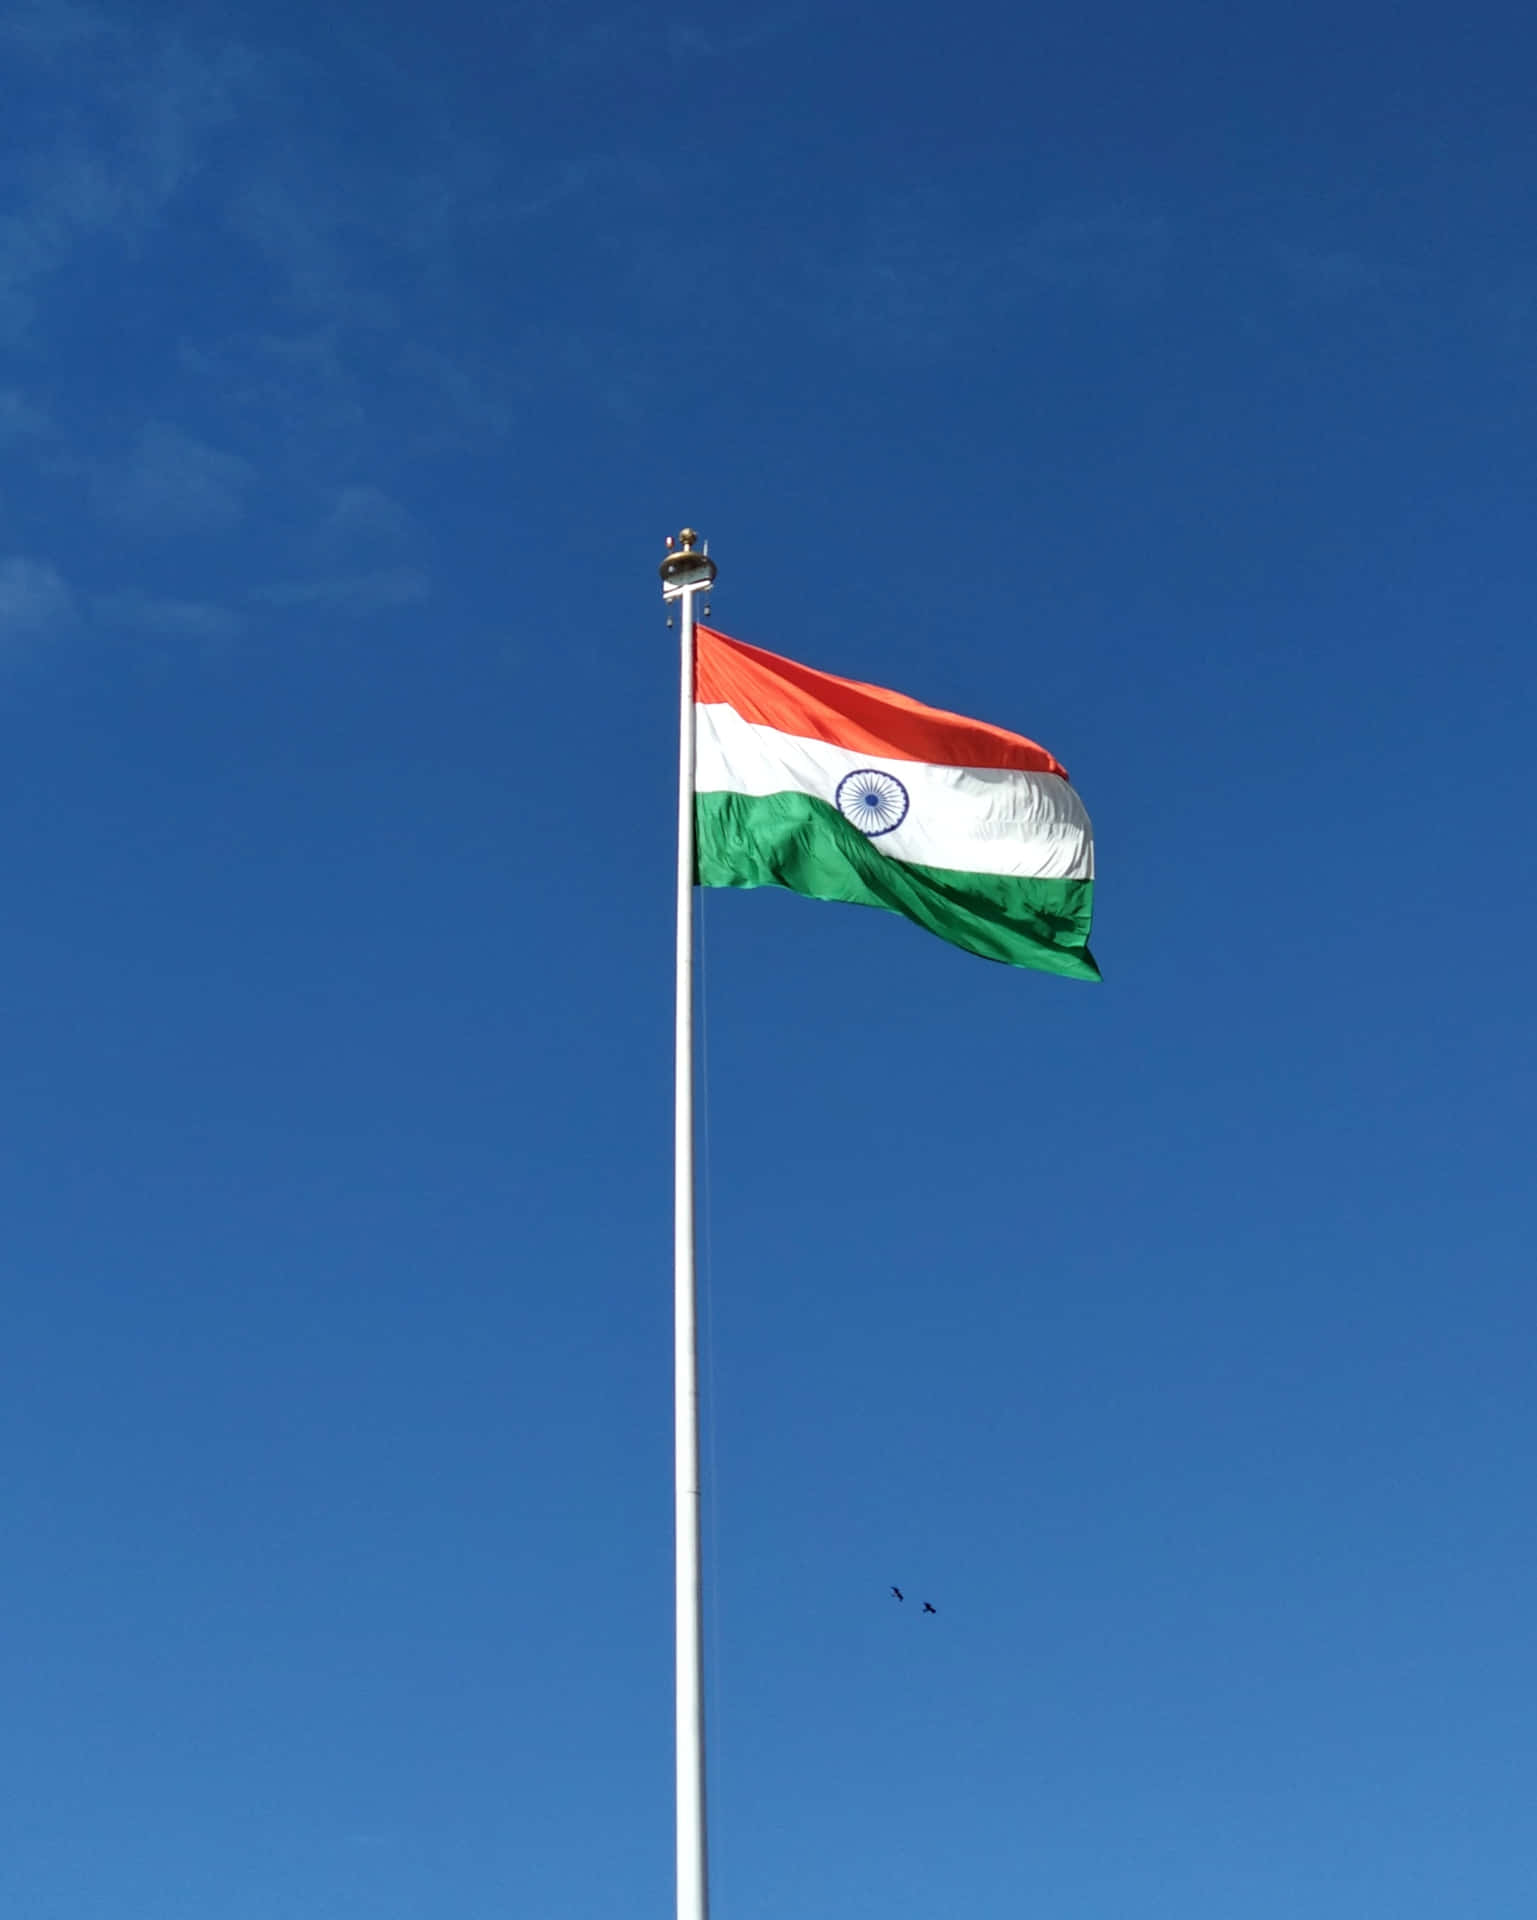 Banderade India: Un Símbolo De Orgullo.